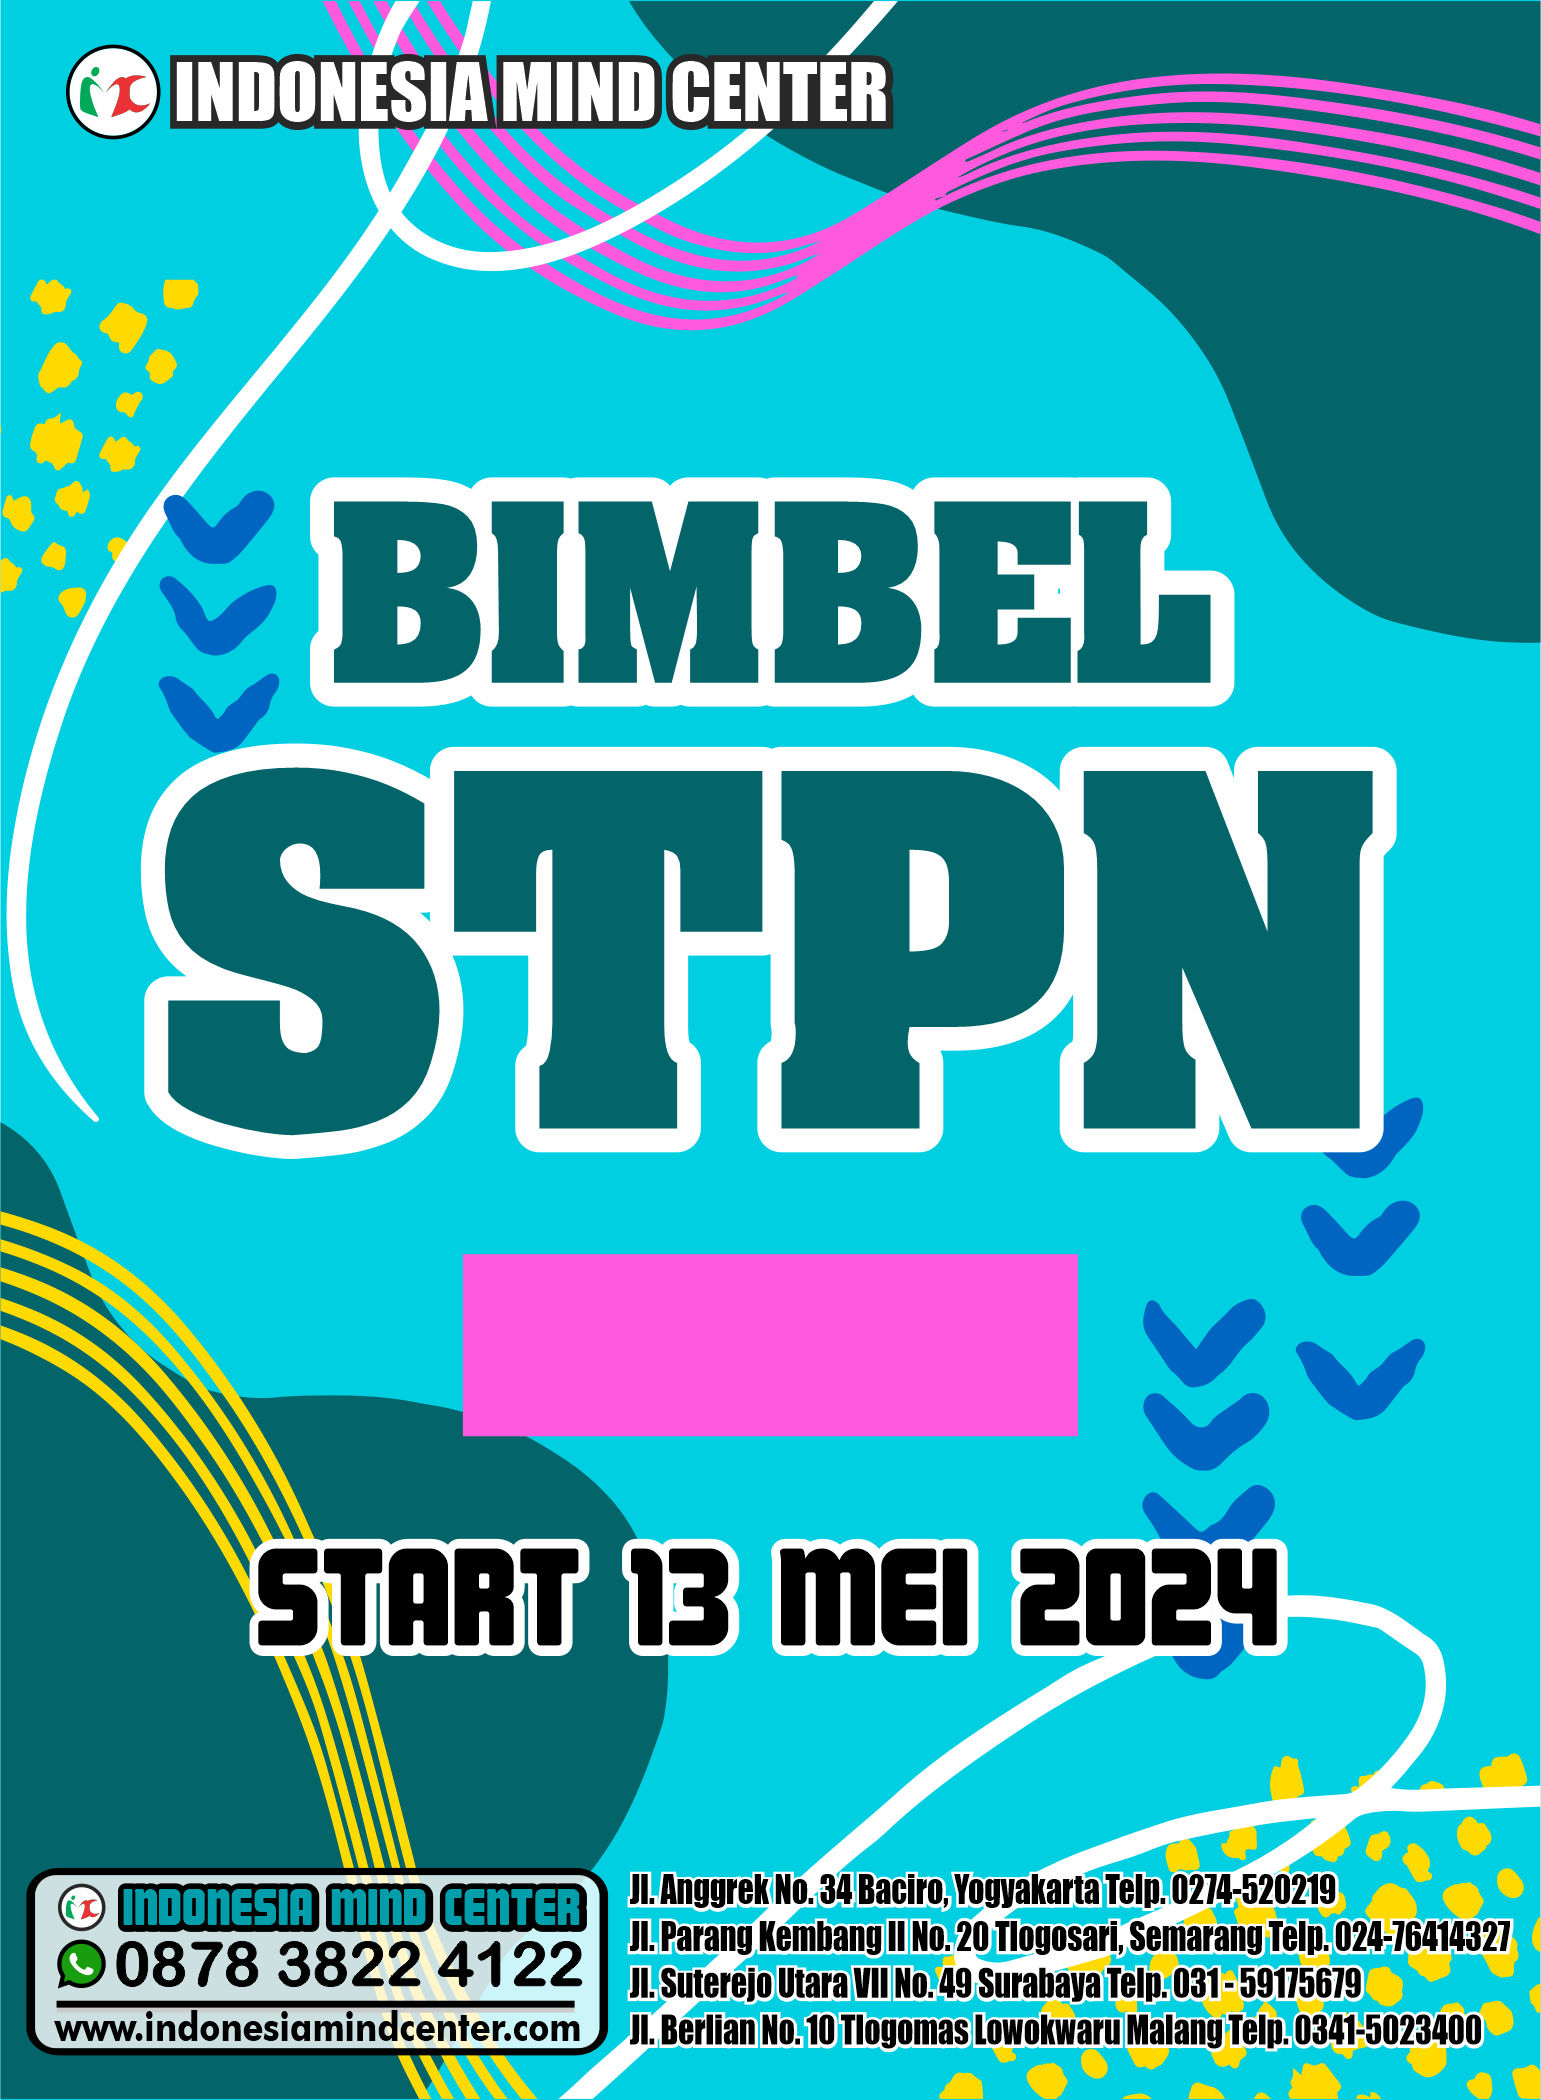 BIMBEL STPN START 13 MEI 2024